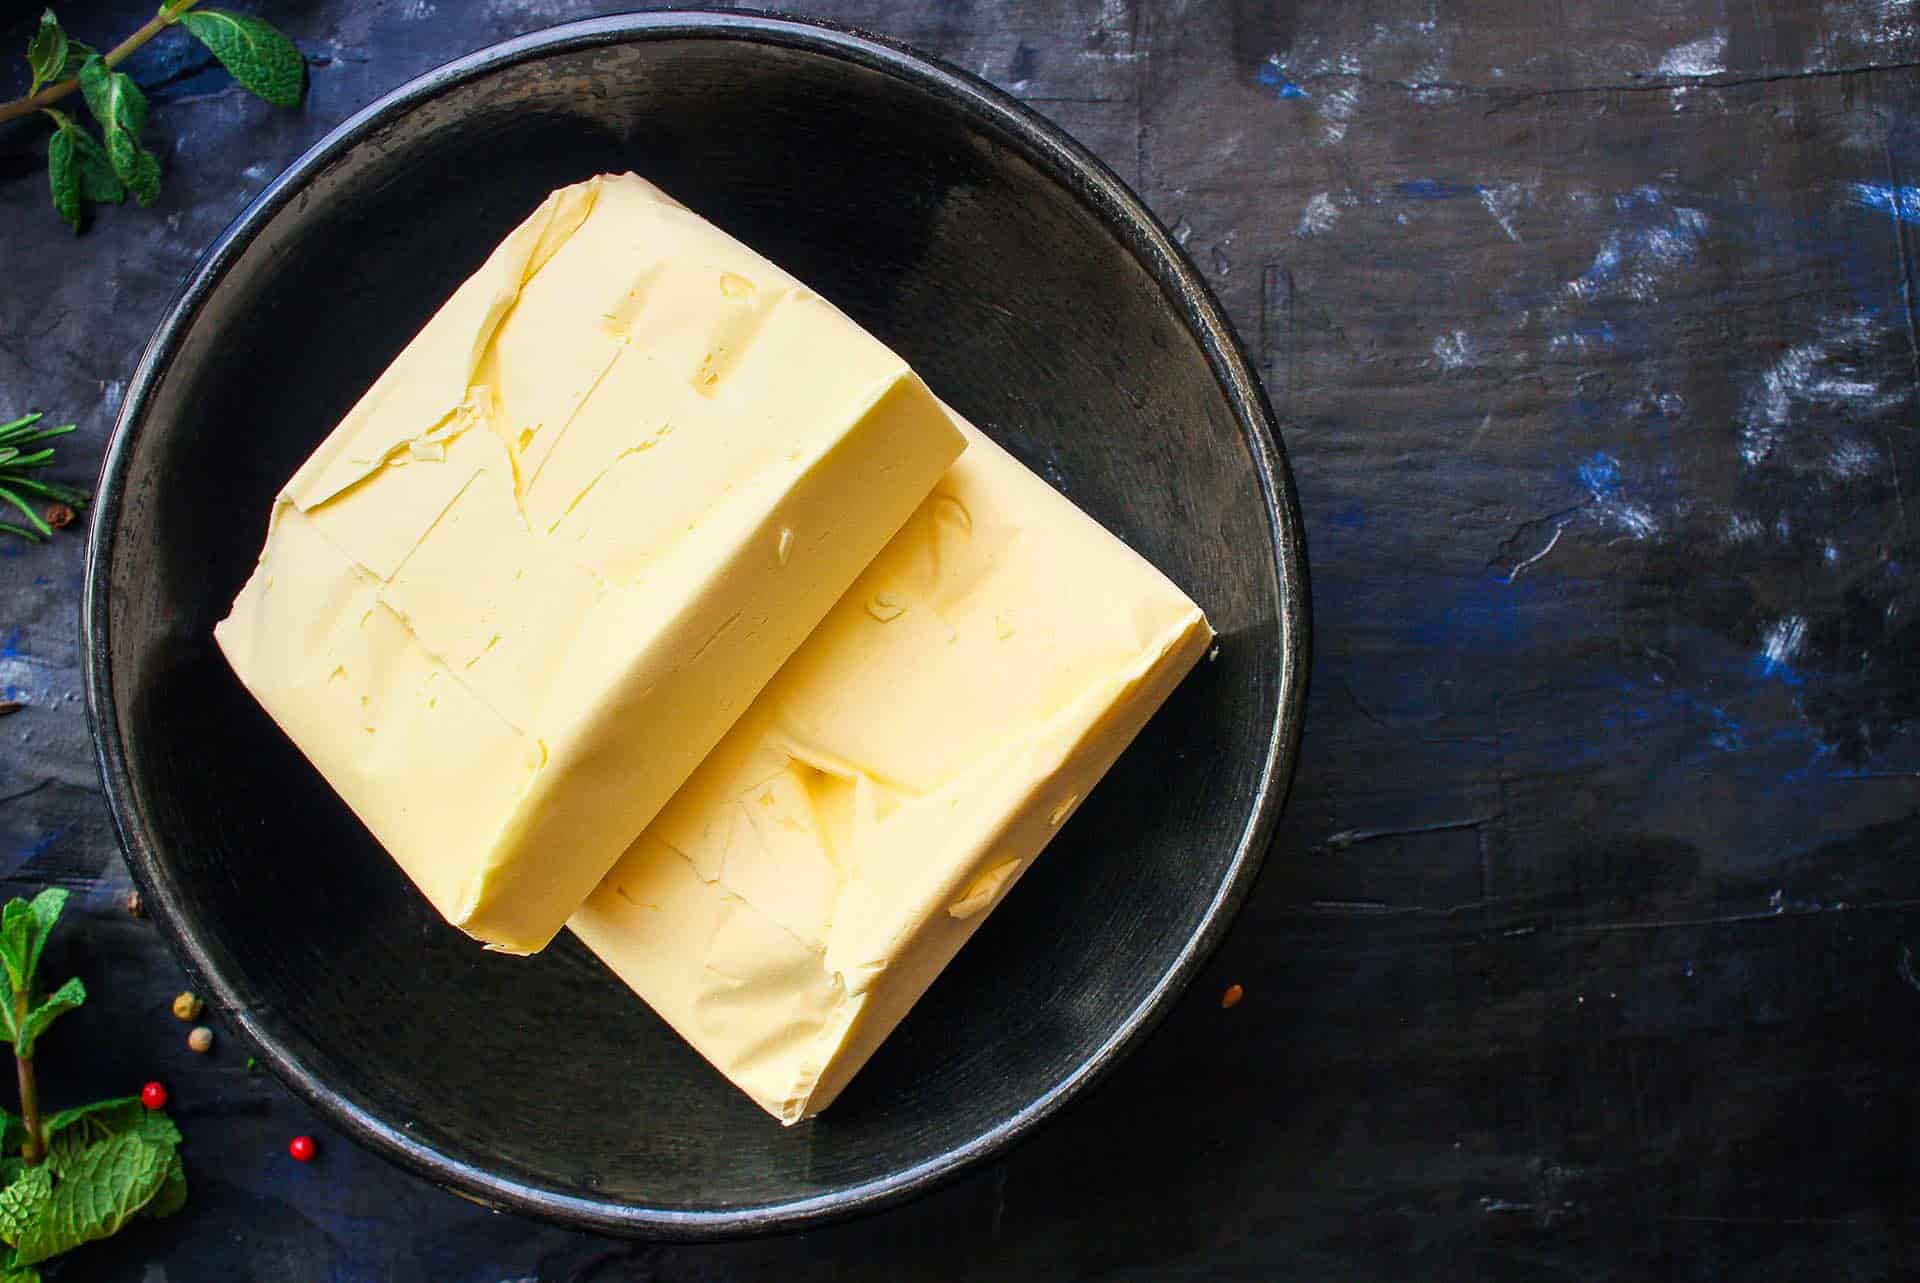 Tereyağı ve Margarin Arasındaki Farklar Nelerdir? Hangisi Daha Sağlıklı?